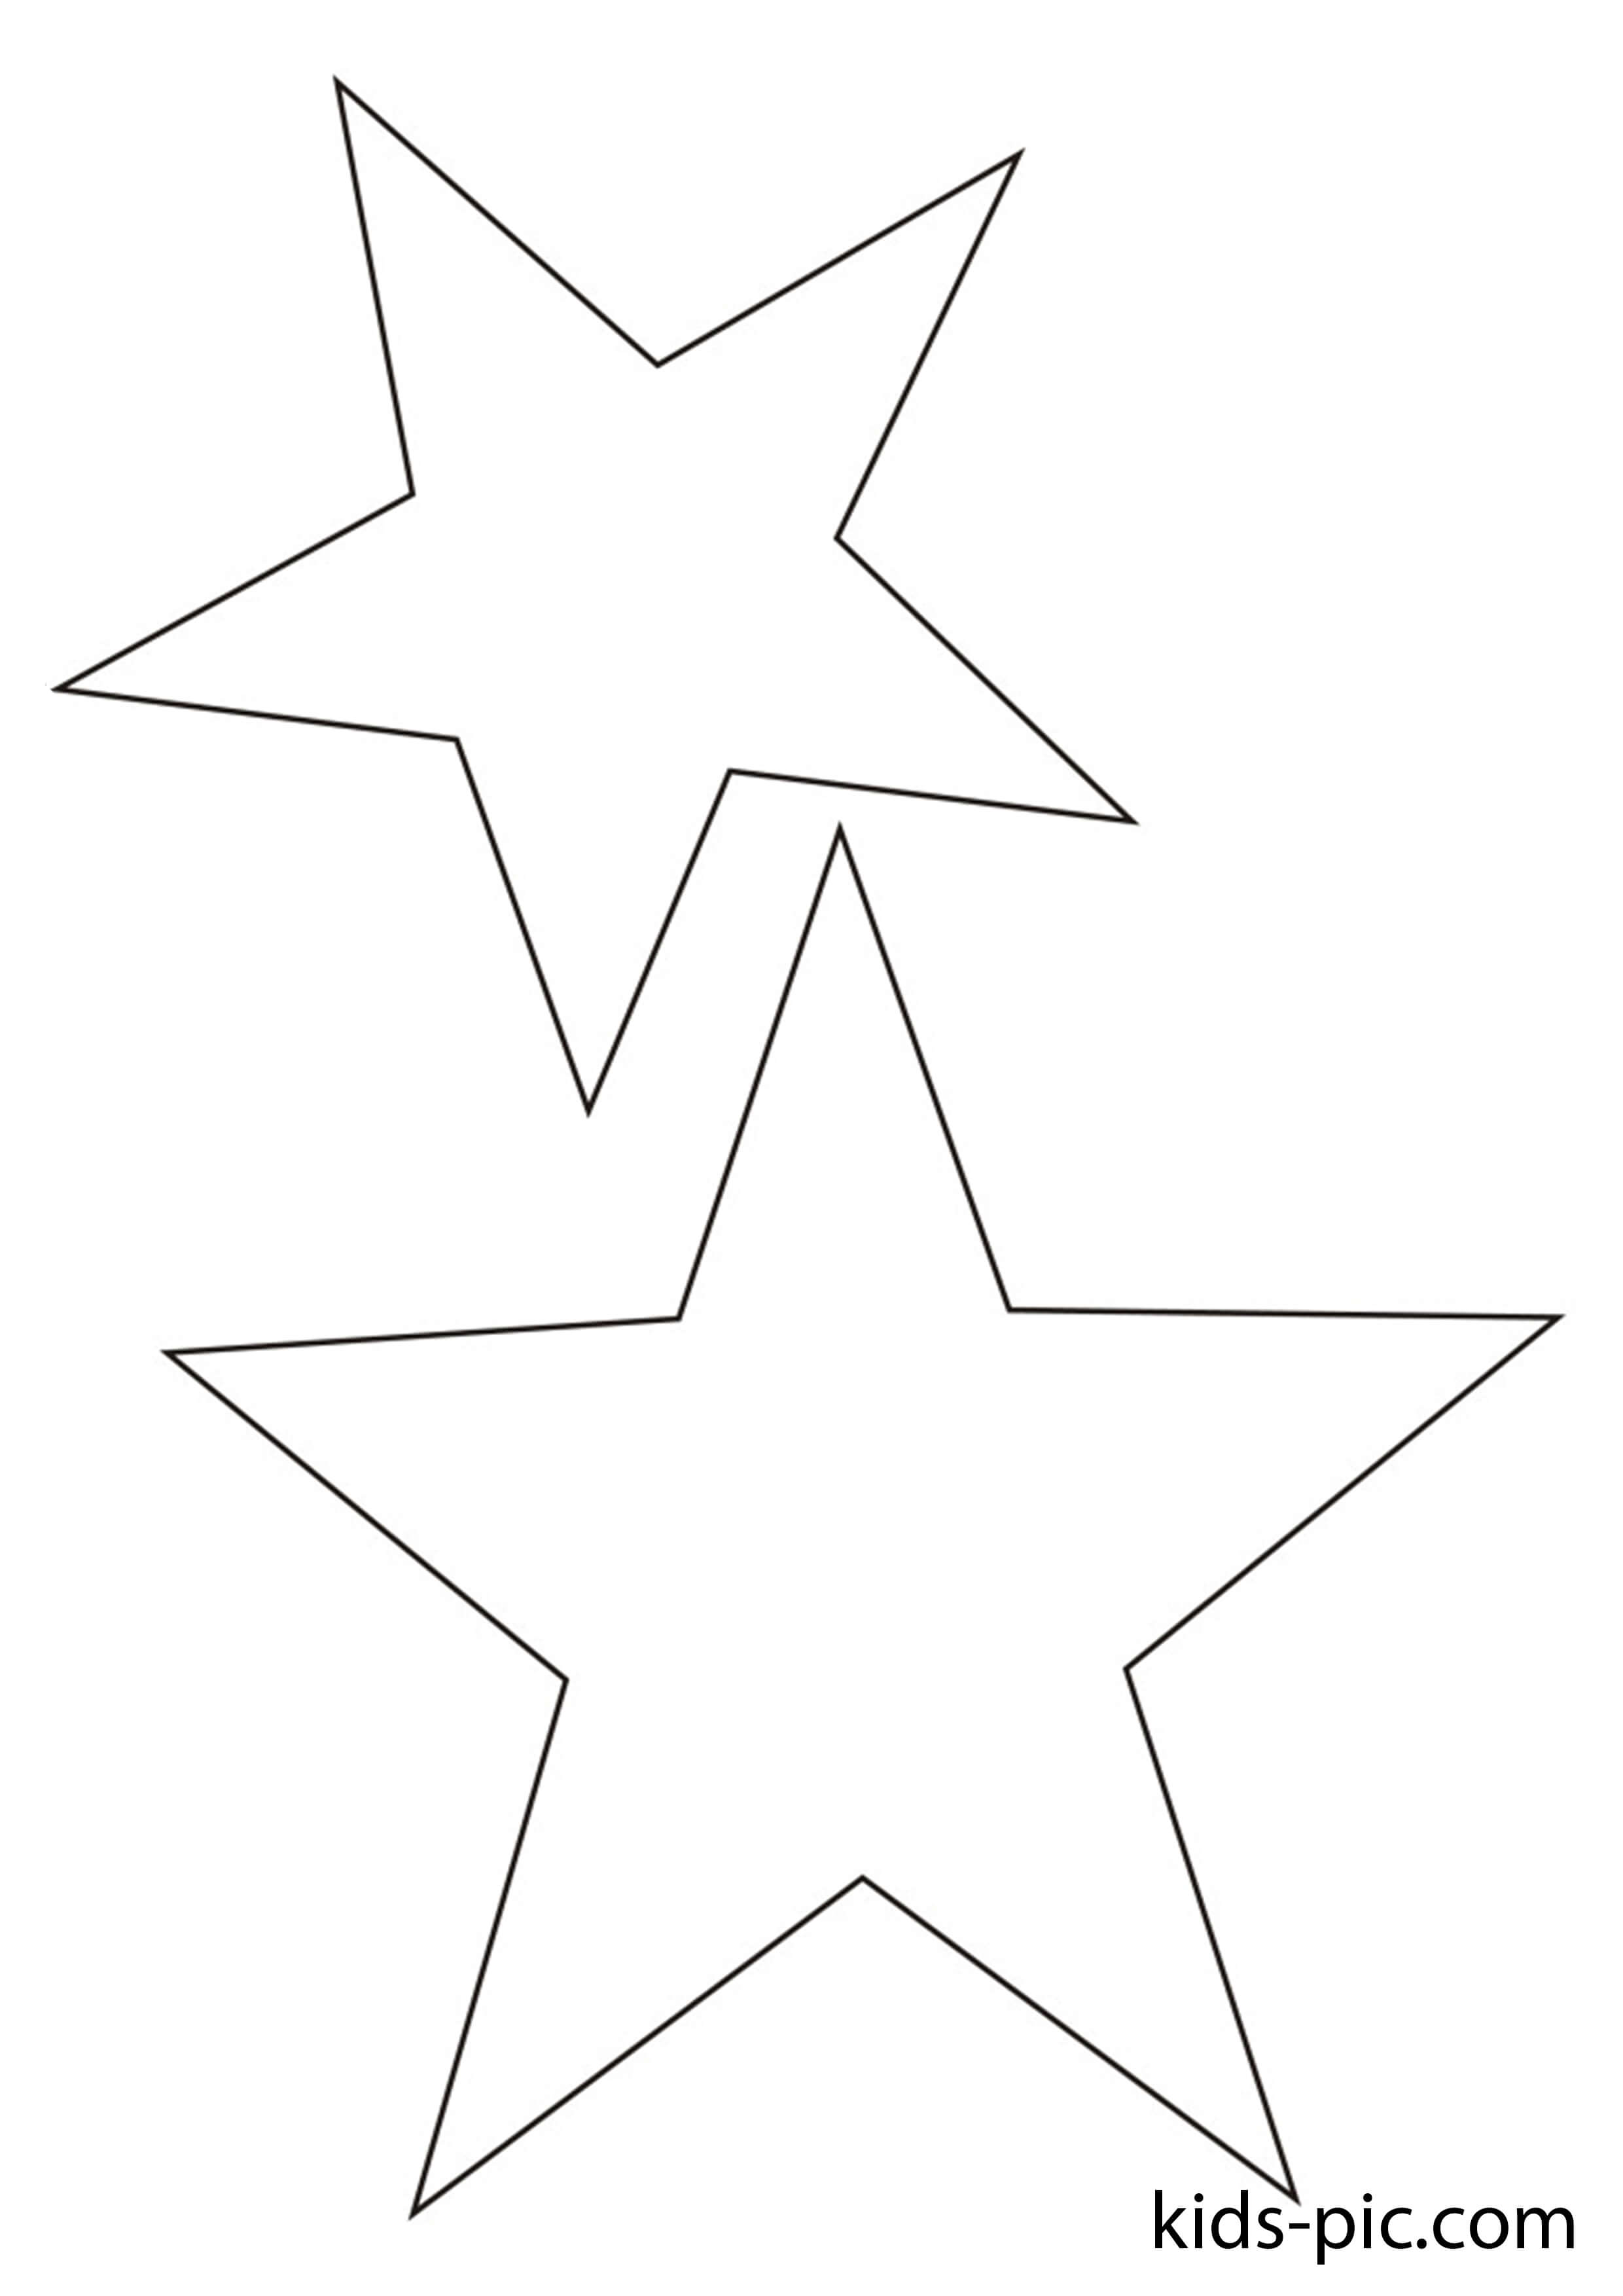 7 способов нарисовать пятиконечную звезду